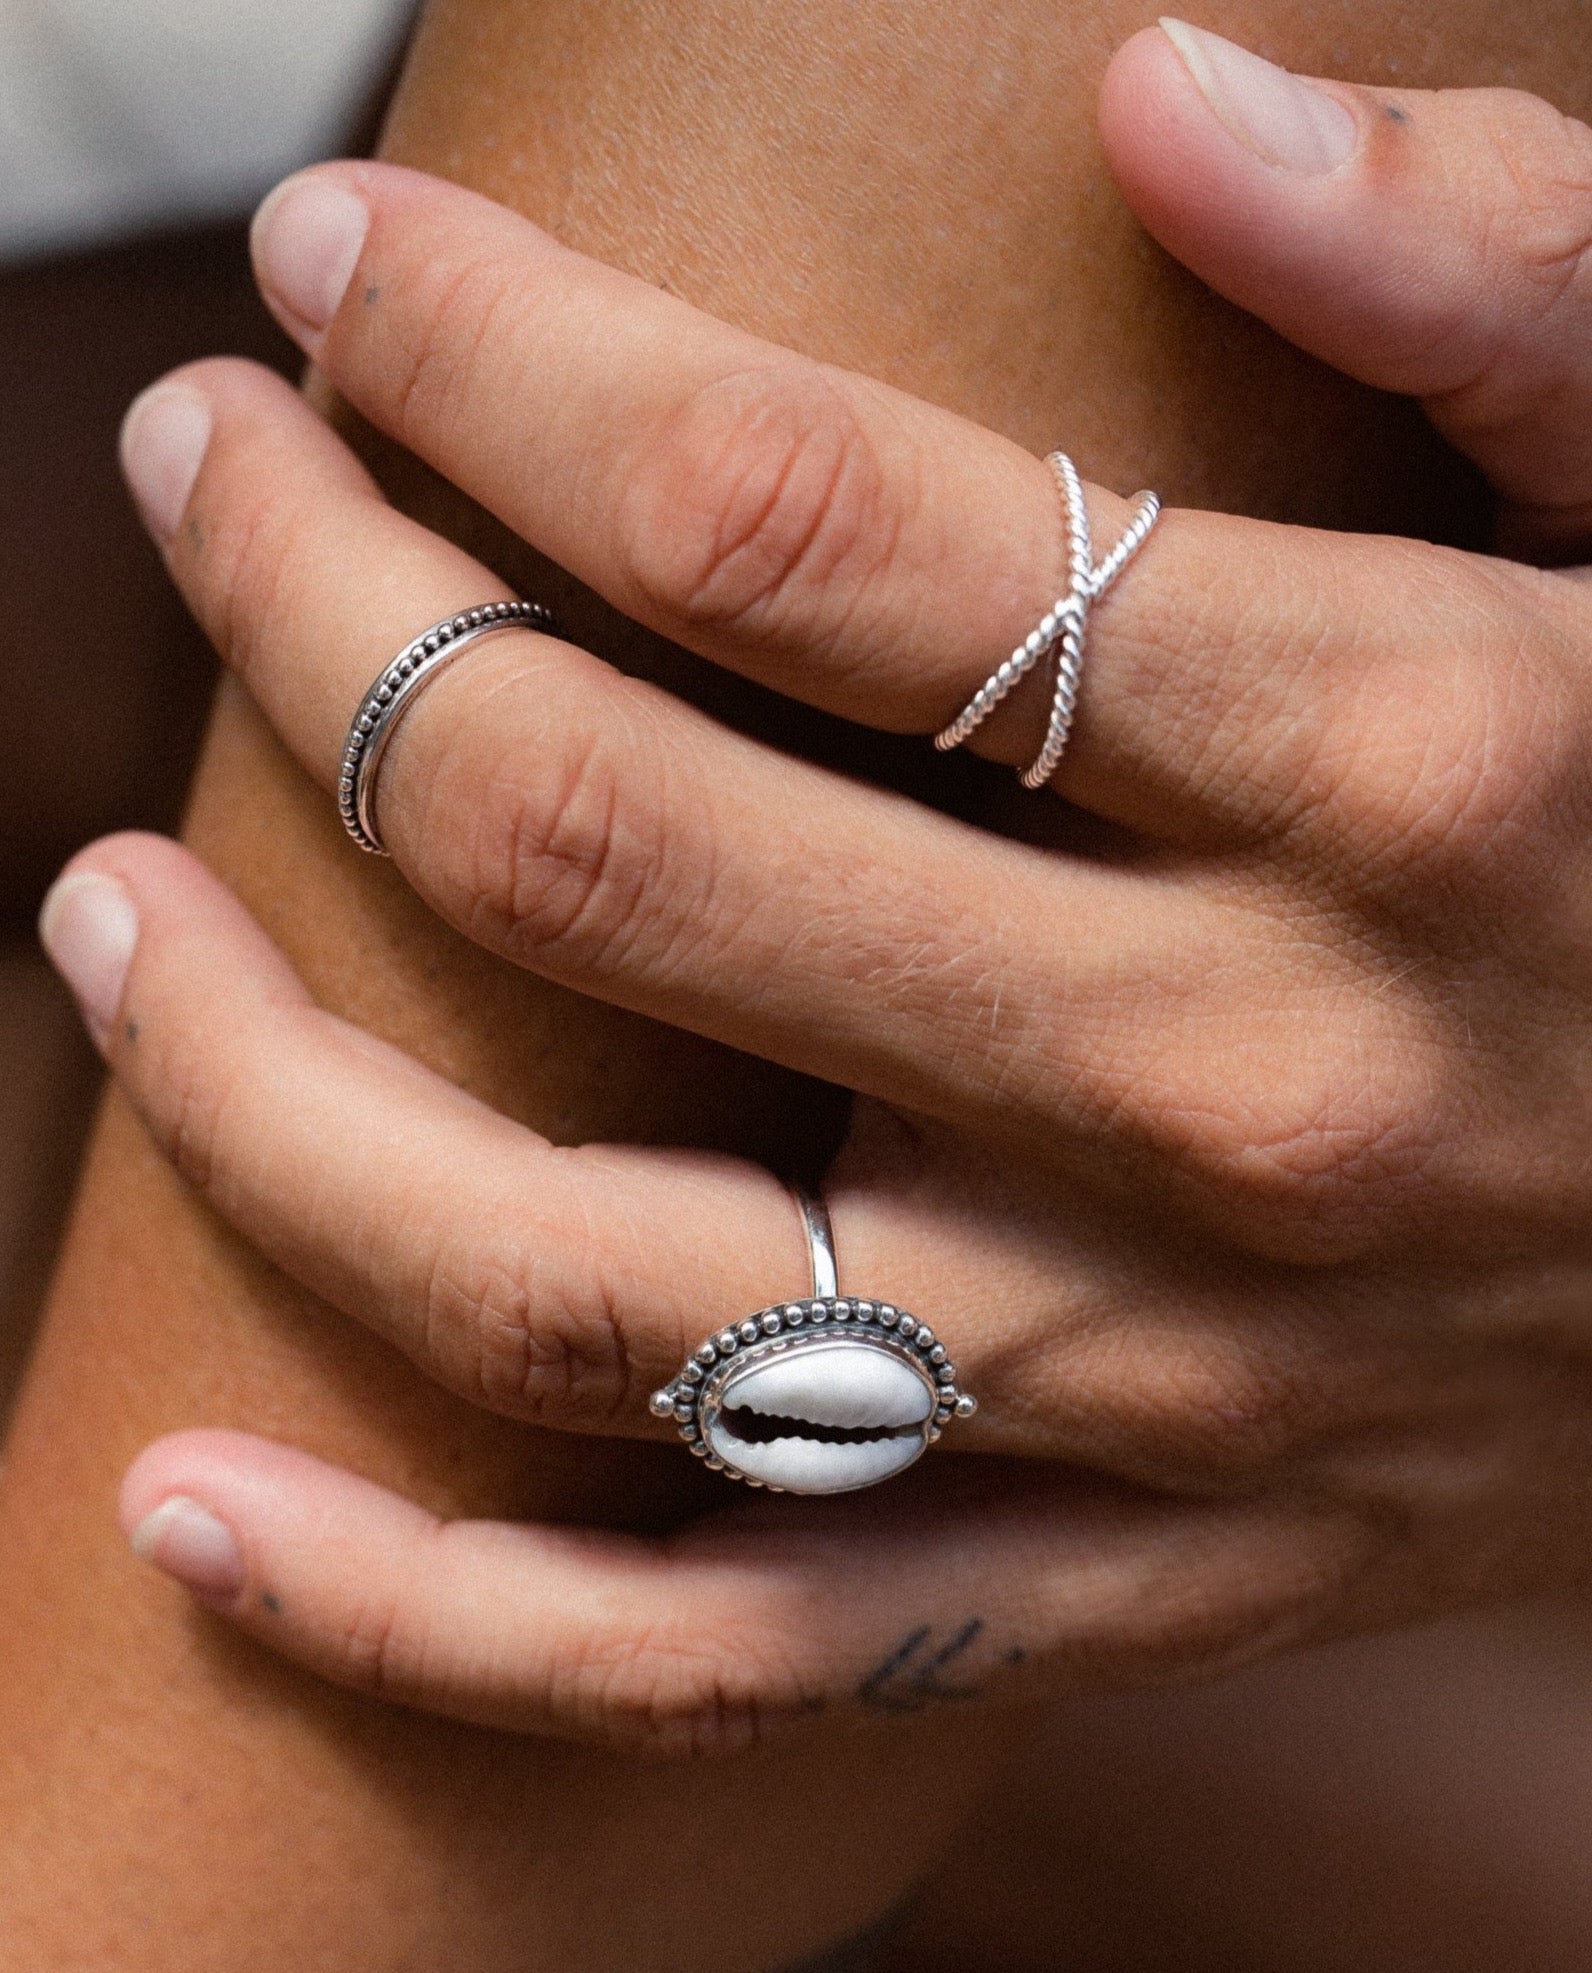 Handmade with love | VERLAN Jewellery | Fairfashion | Handgemachte Ringe im Boho Look aus Bali | Fair und nachhaltig handgefertigter Schmuck | Verstellbarer Ring | Kombi & adjustable Ring | Perfekt um ihn an jedem Finger zu tragen | Shell Ring